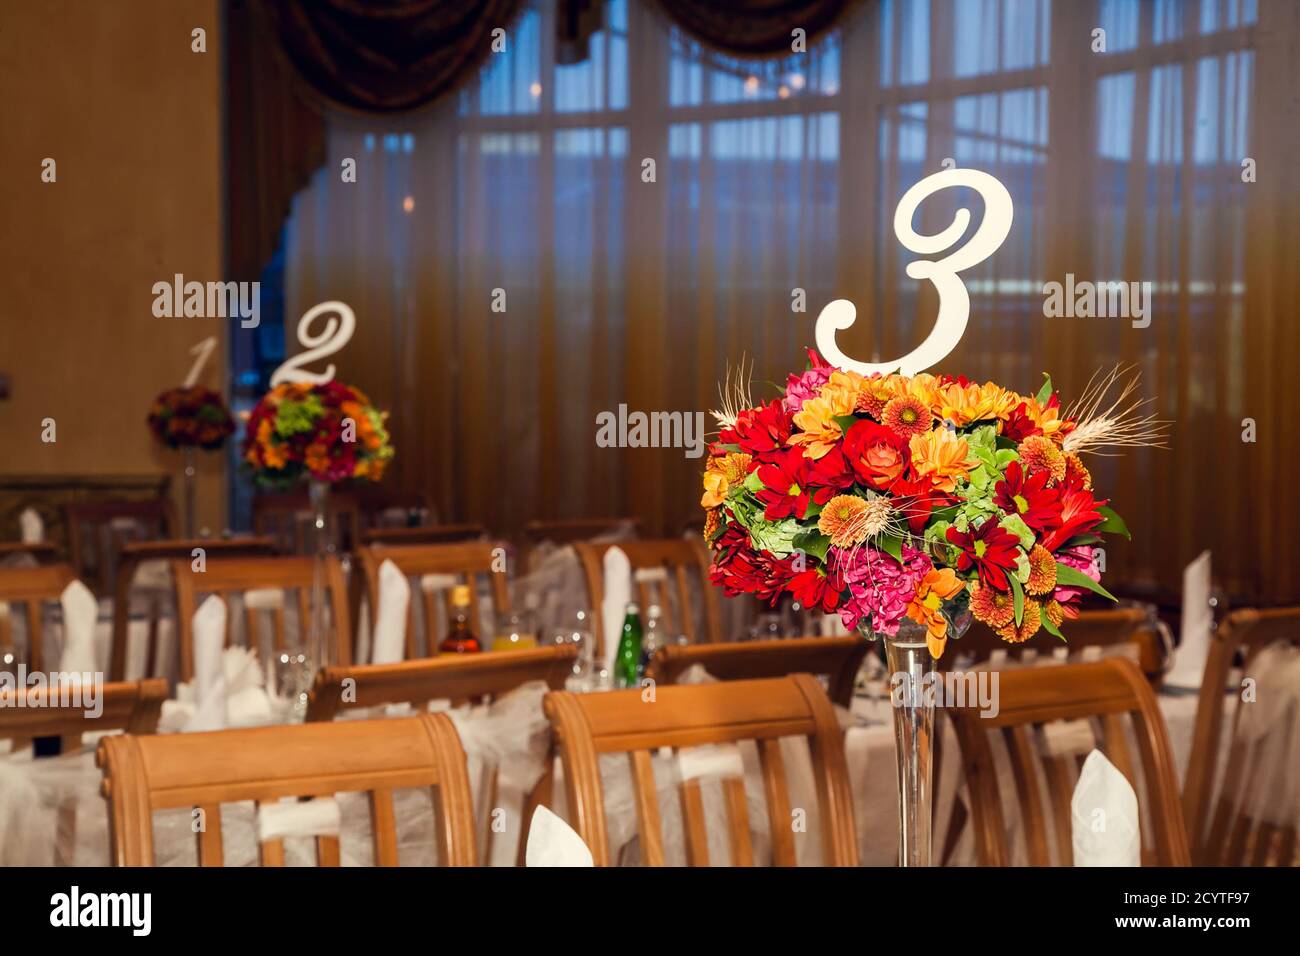 Le hall du restaurant, décoré de fleurs dans le style de l'automne. Décoration de mariage, fleurs d'automne et arrangements floraux. Banque D'Images